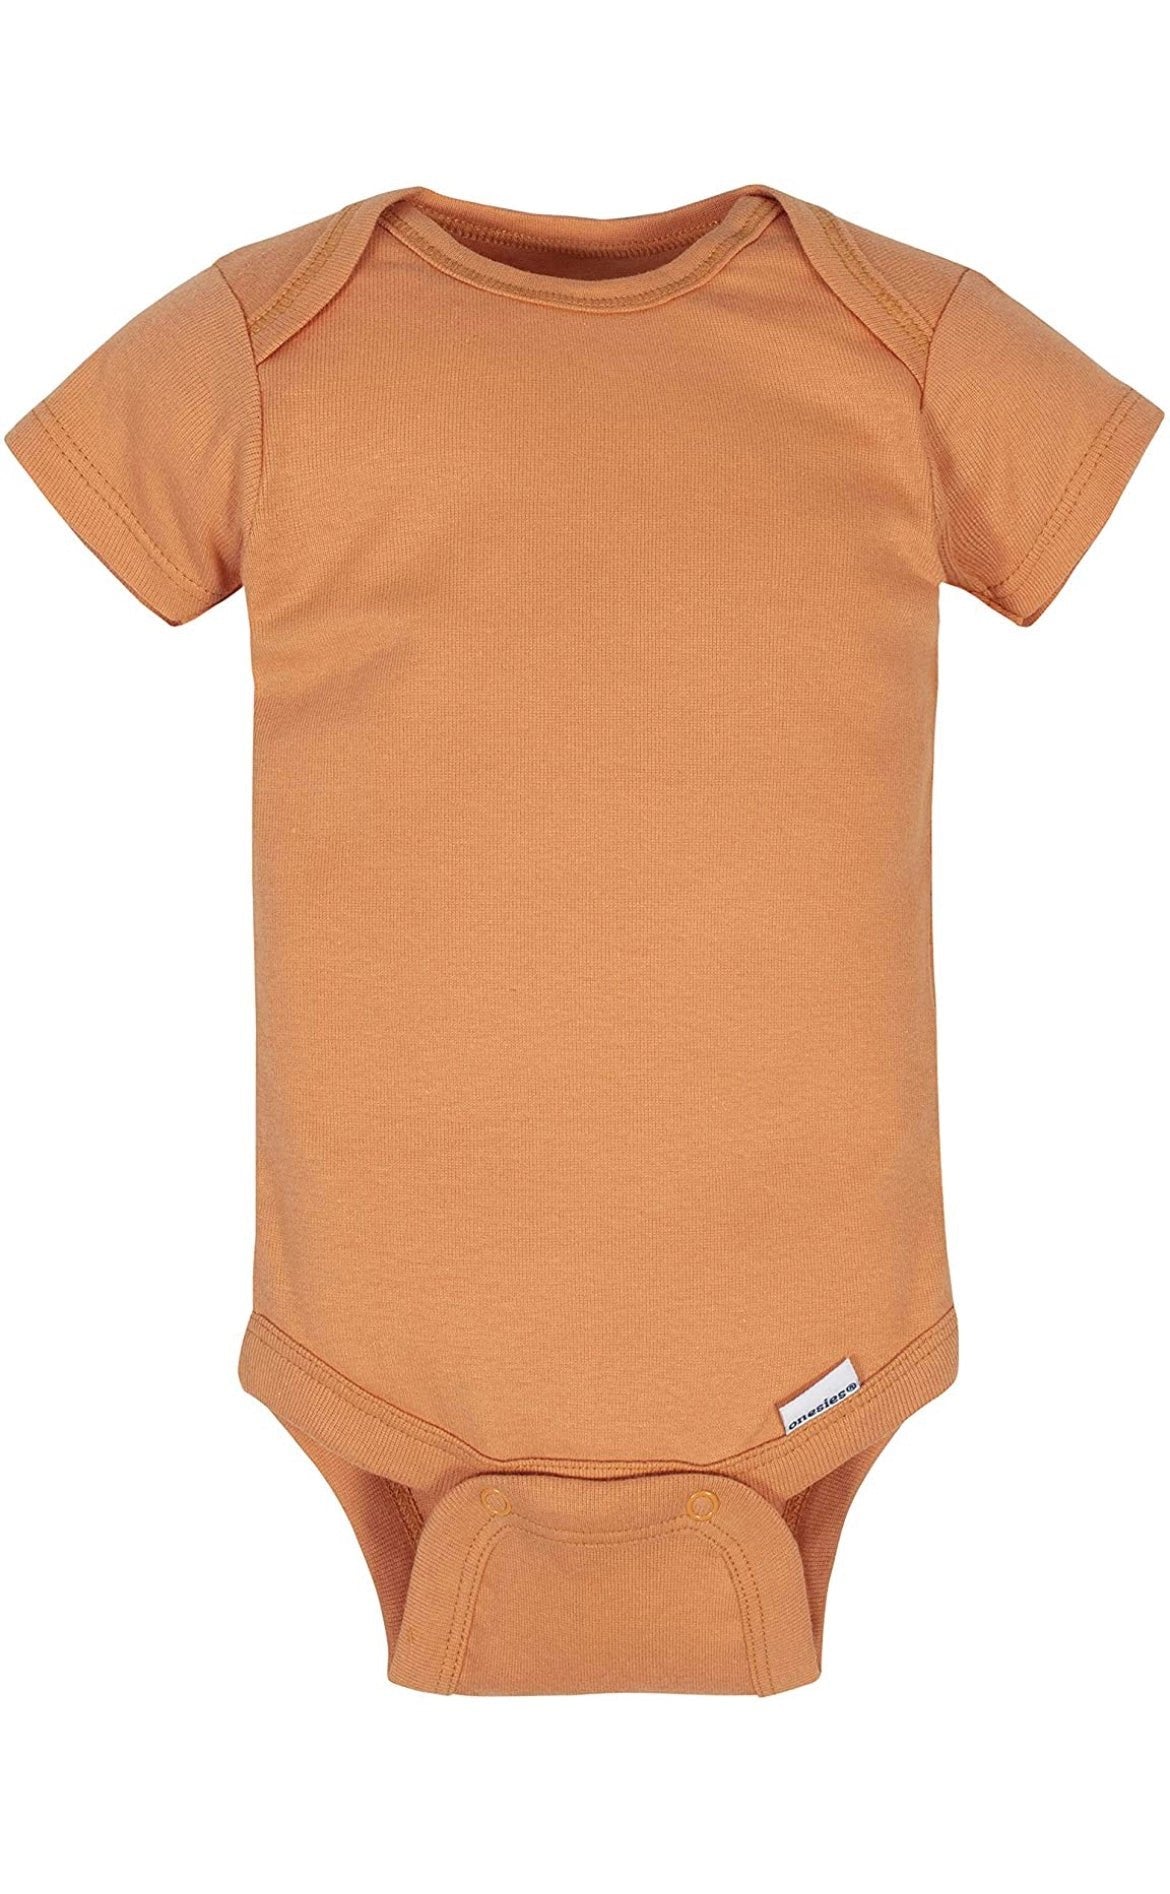 Gerber unisex-baby 8-pack Short Sleeve Onesies Bodysuits.